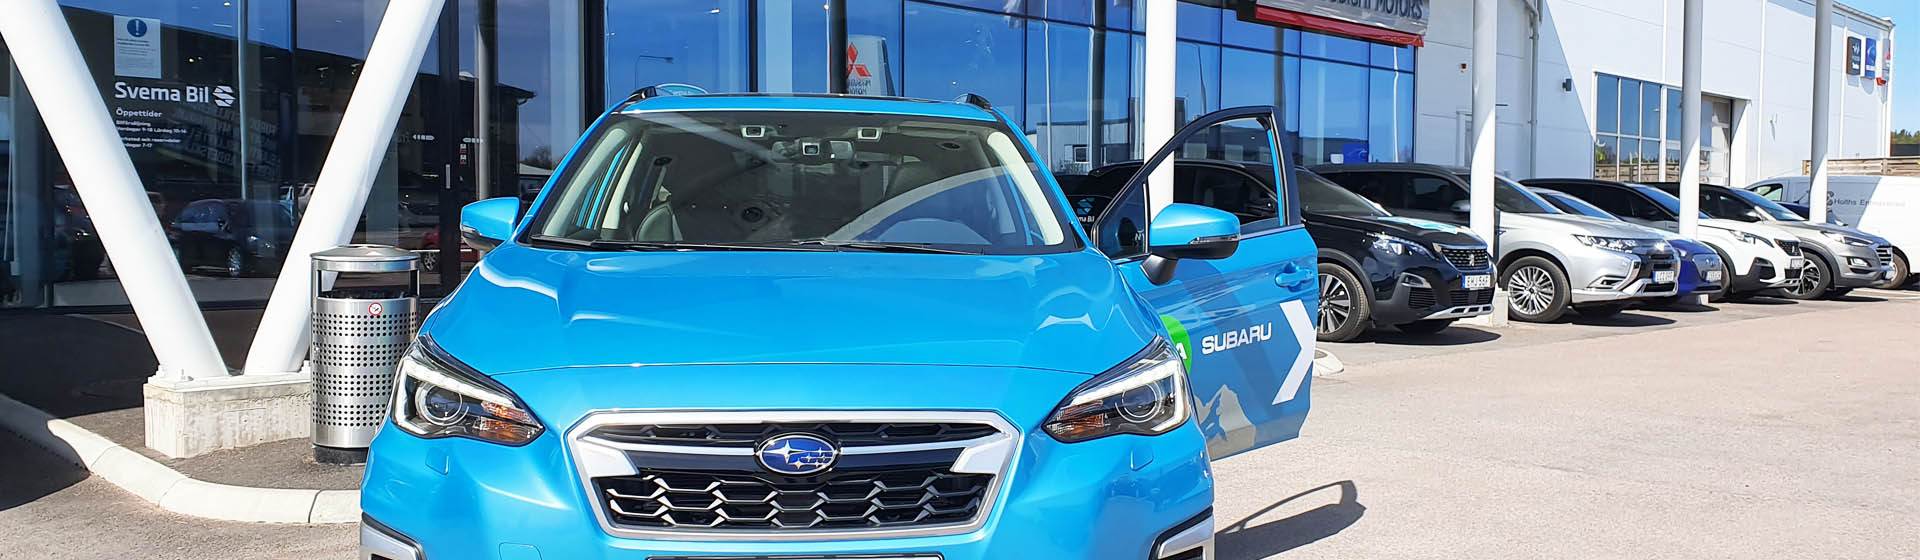 Svema Bil - auktoriserad och certifierad Subaru verkstad - för din trygghet